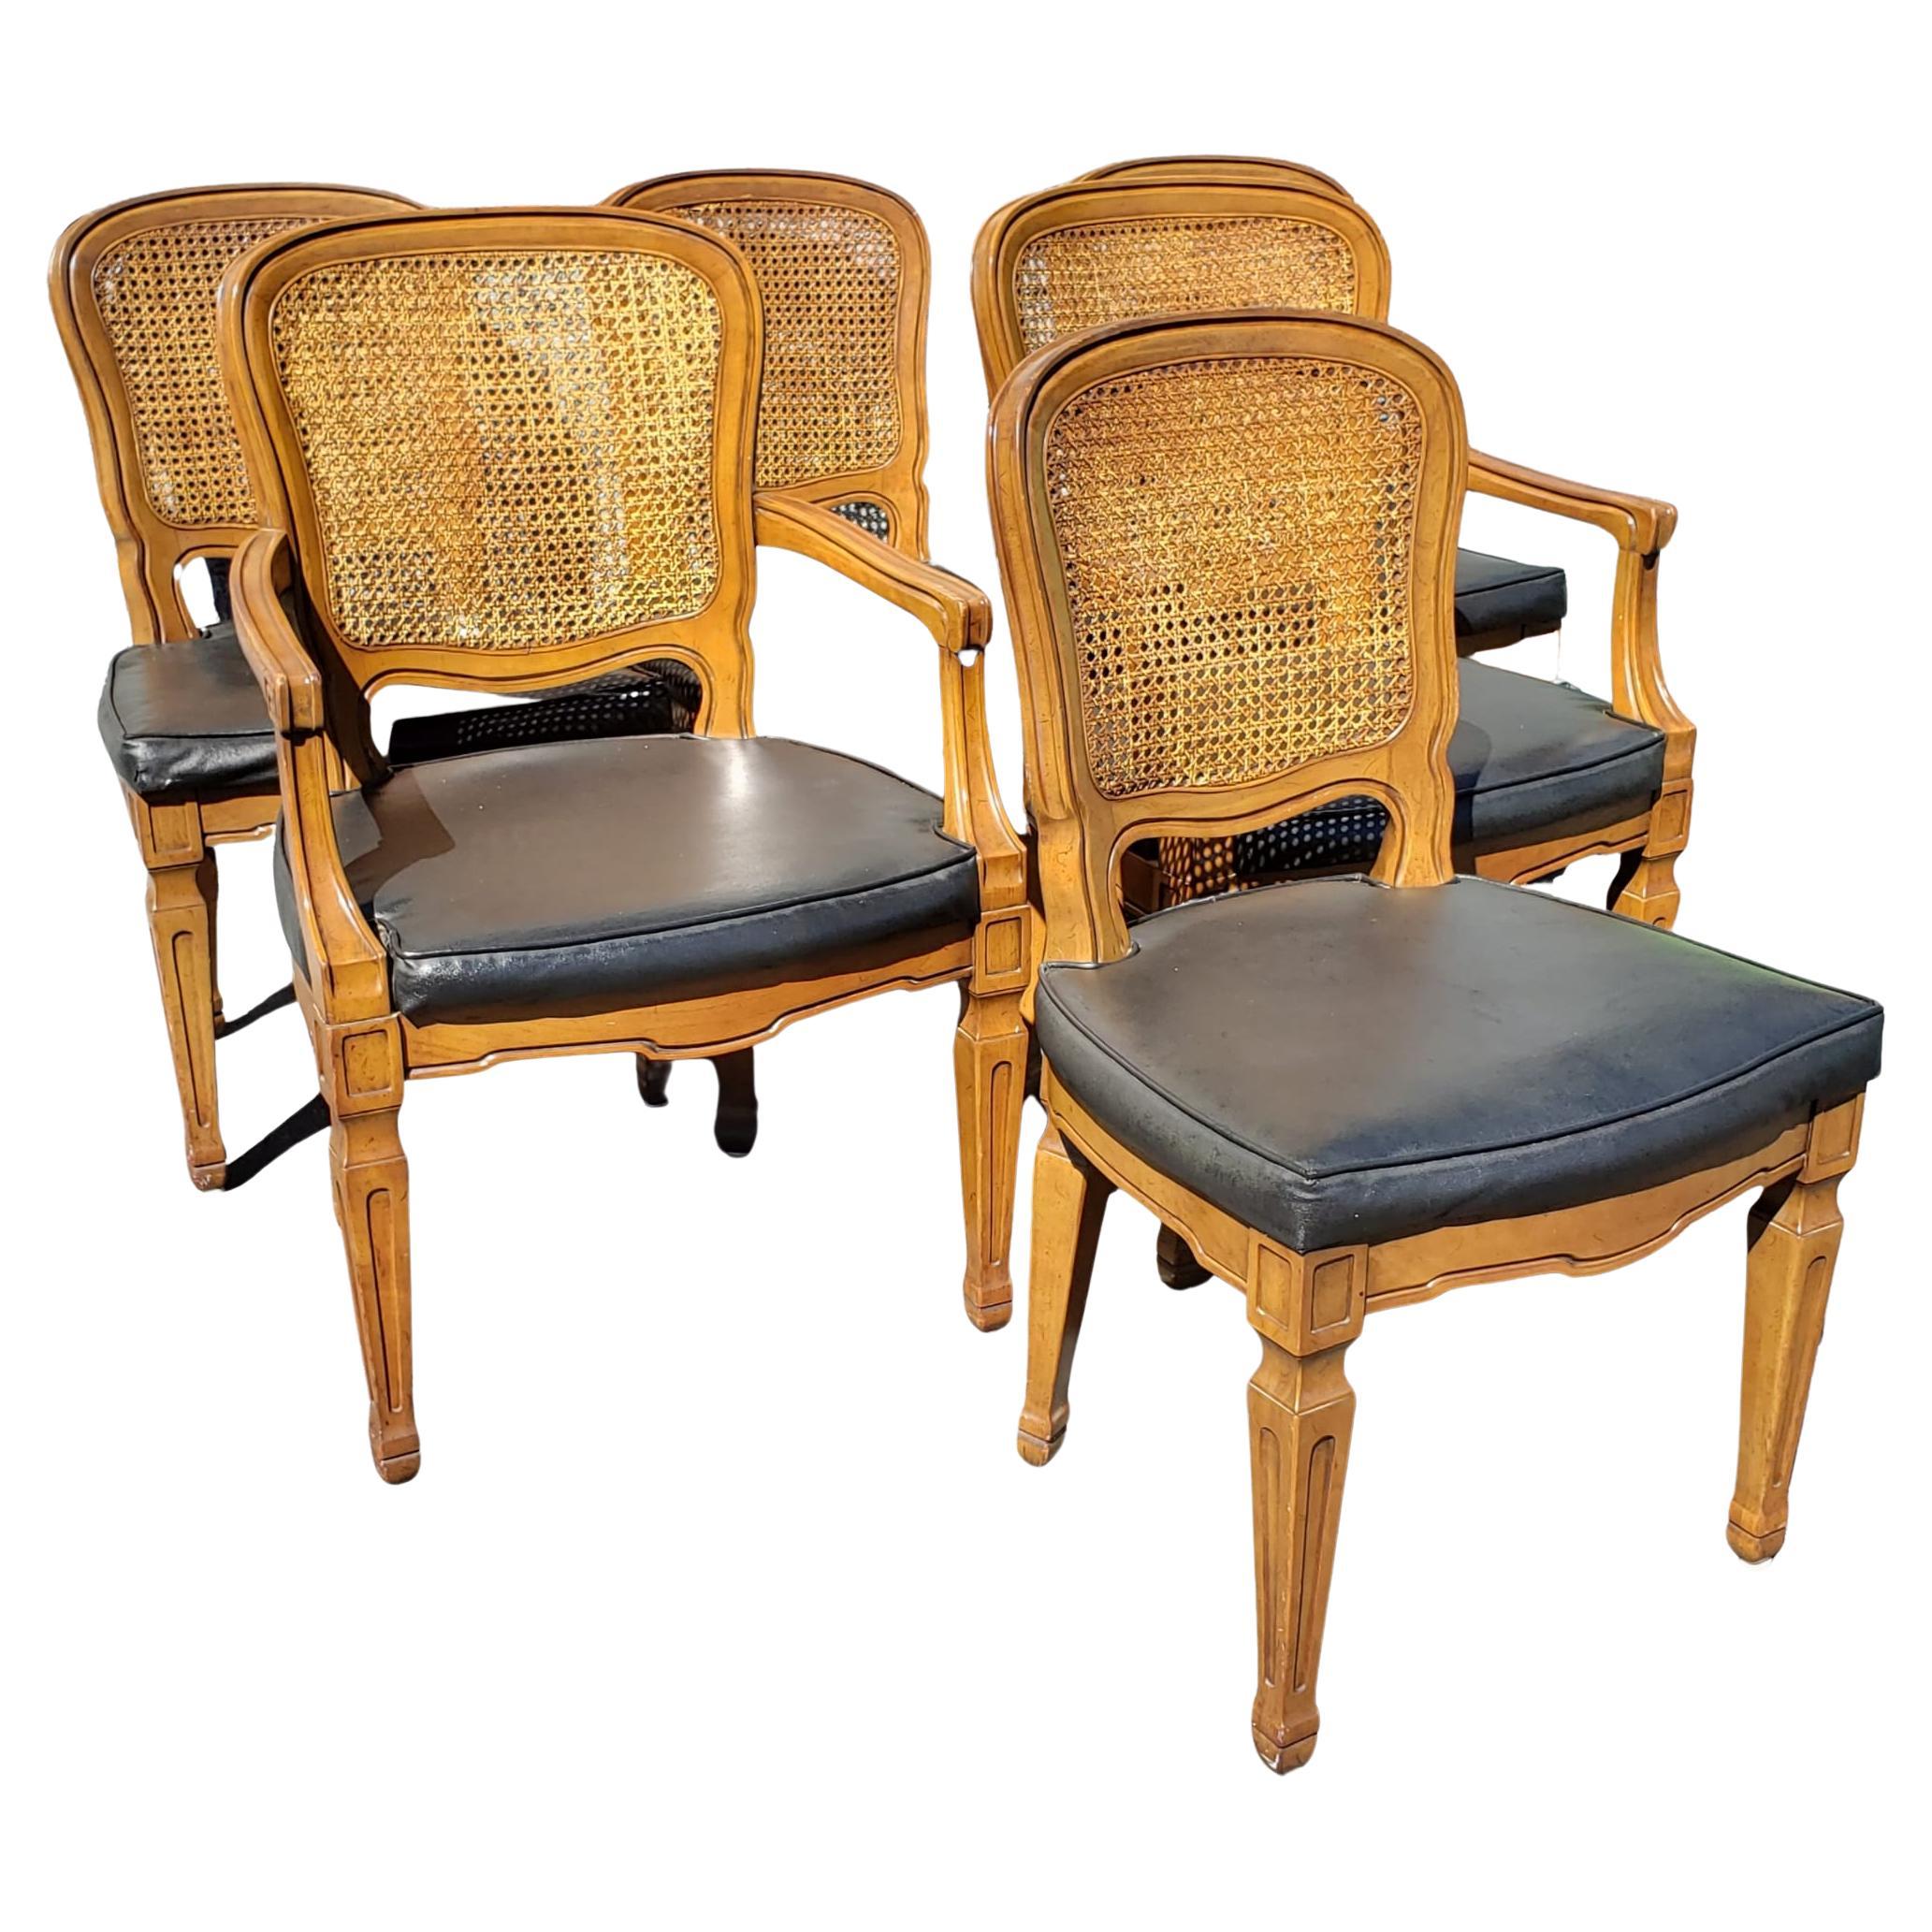 Seltene französische Vintage-Stühle mit Kunstledersitzen von Henredon.
Kunstledersitze in gutem Zustand, sowie Caning-Arbeiten. 
Beistellstühle messen 20,5 